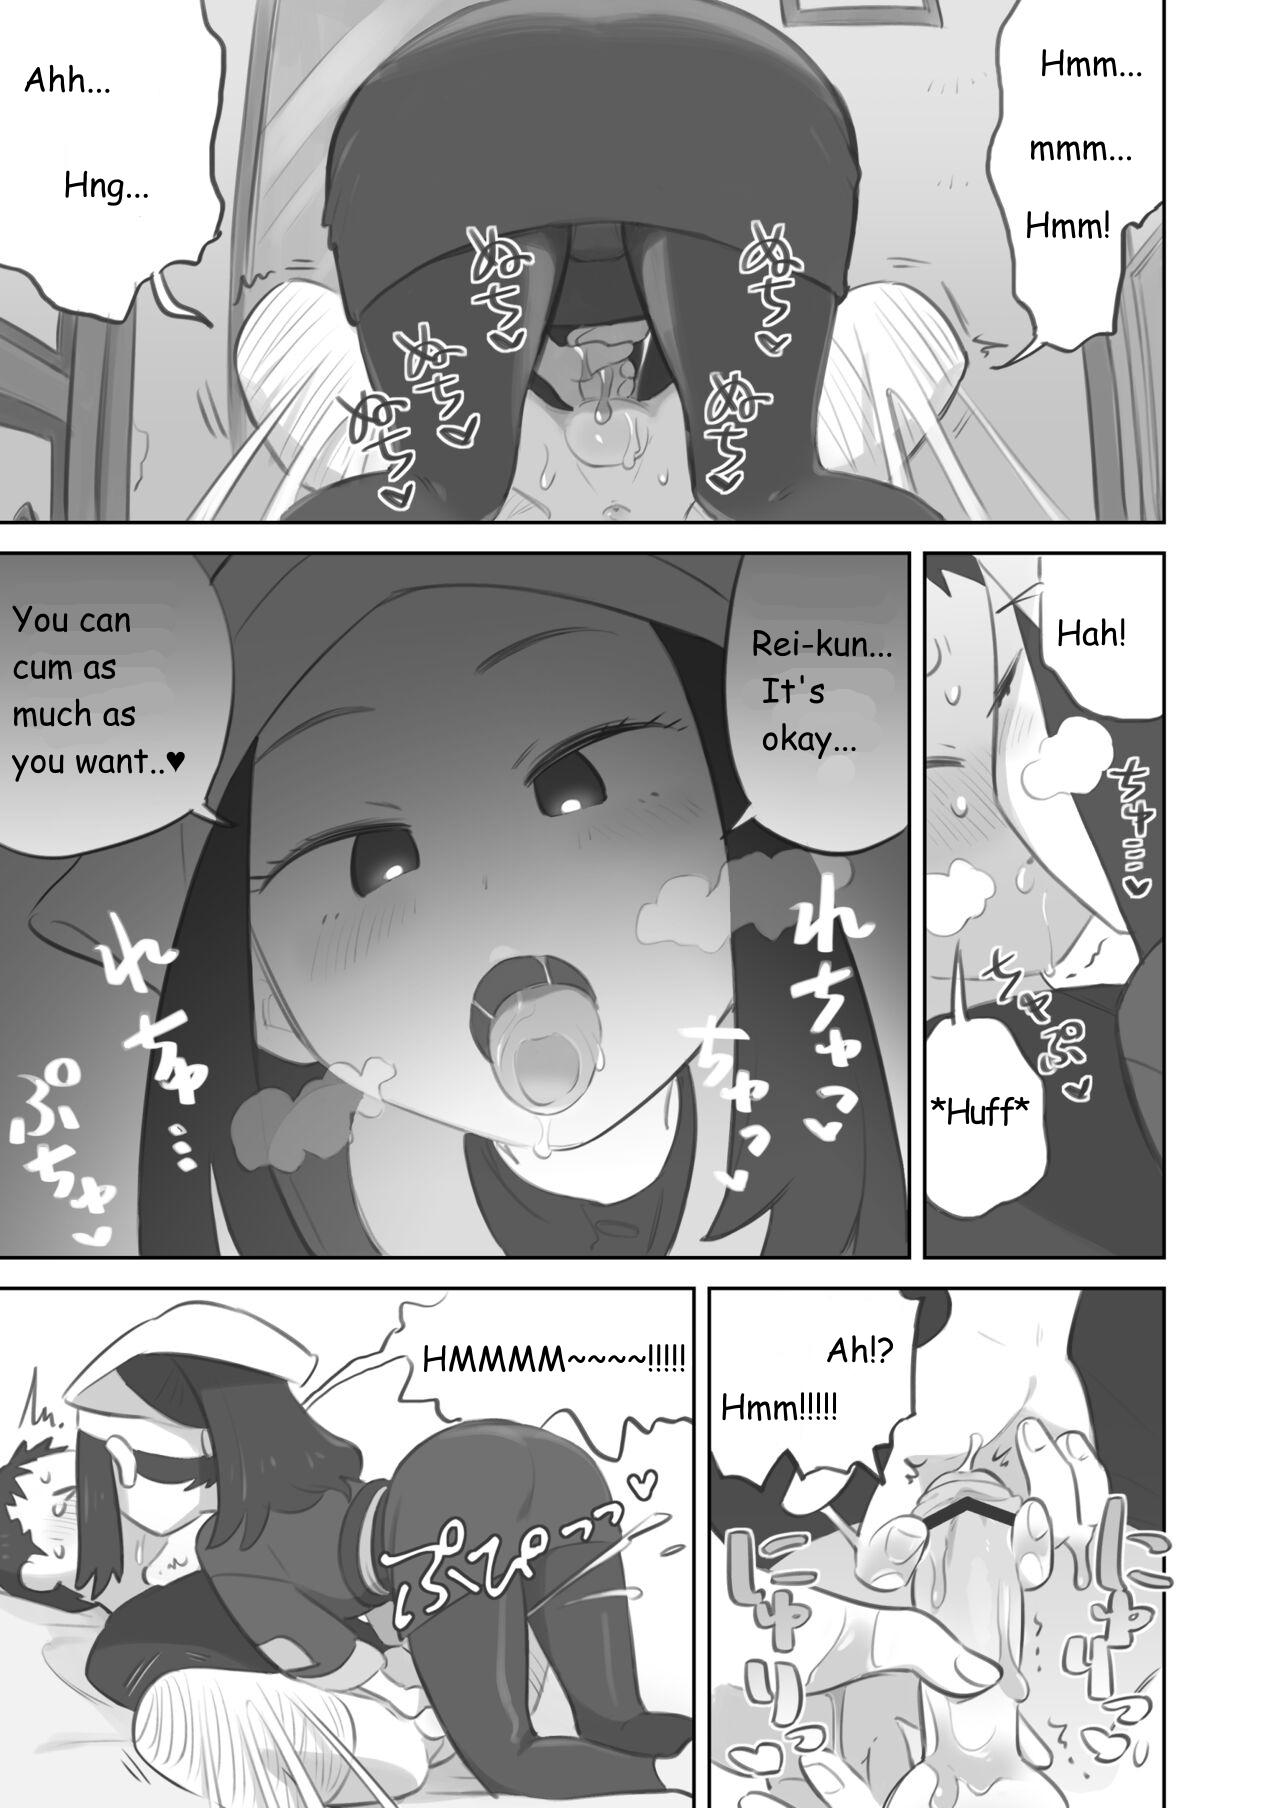 Mamando Tekoki Manga Hentai - Page 11